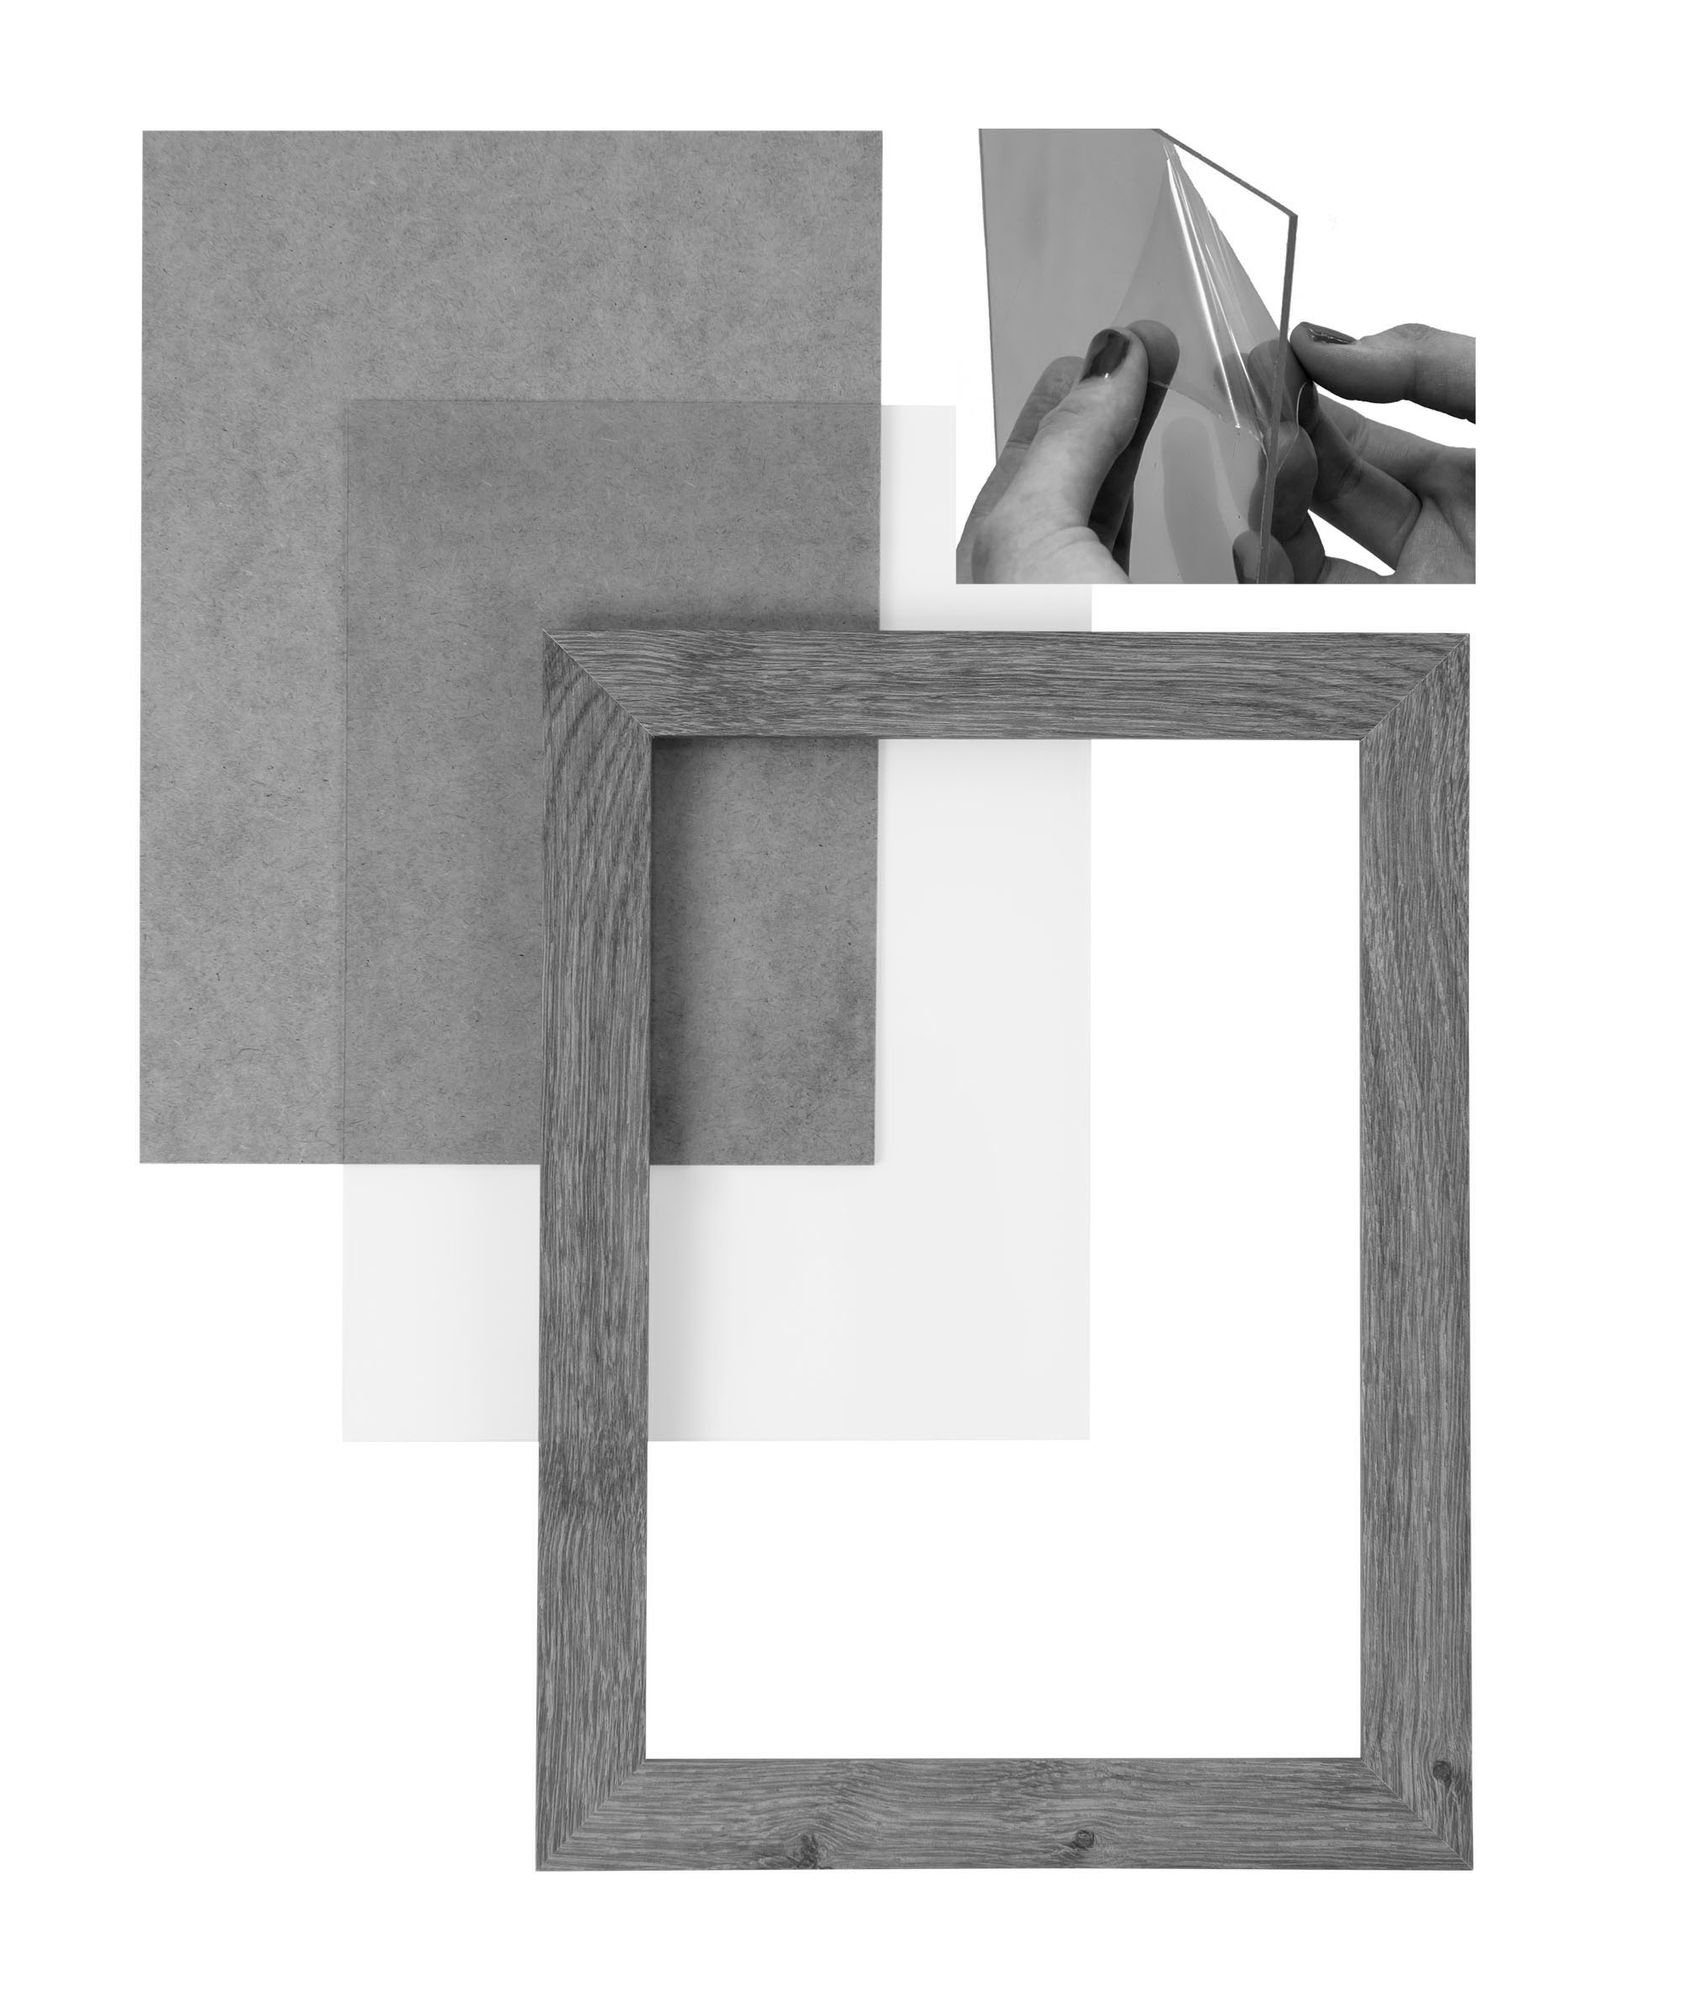 Acrylglas, eiche eckiger 'Collage' Rückwand FSC® in Holz nach Clamaro Aufhänger MDF 40x65 Rahmen Bilderrahmen und sonama handgefertigt Bilderrahmen Moderner Maß CLAMARO inkl.